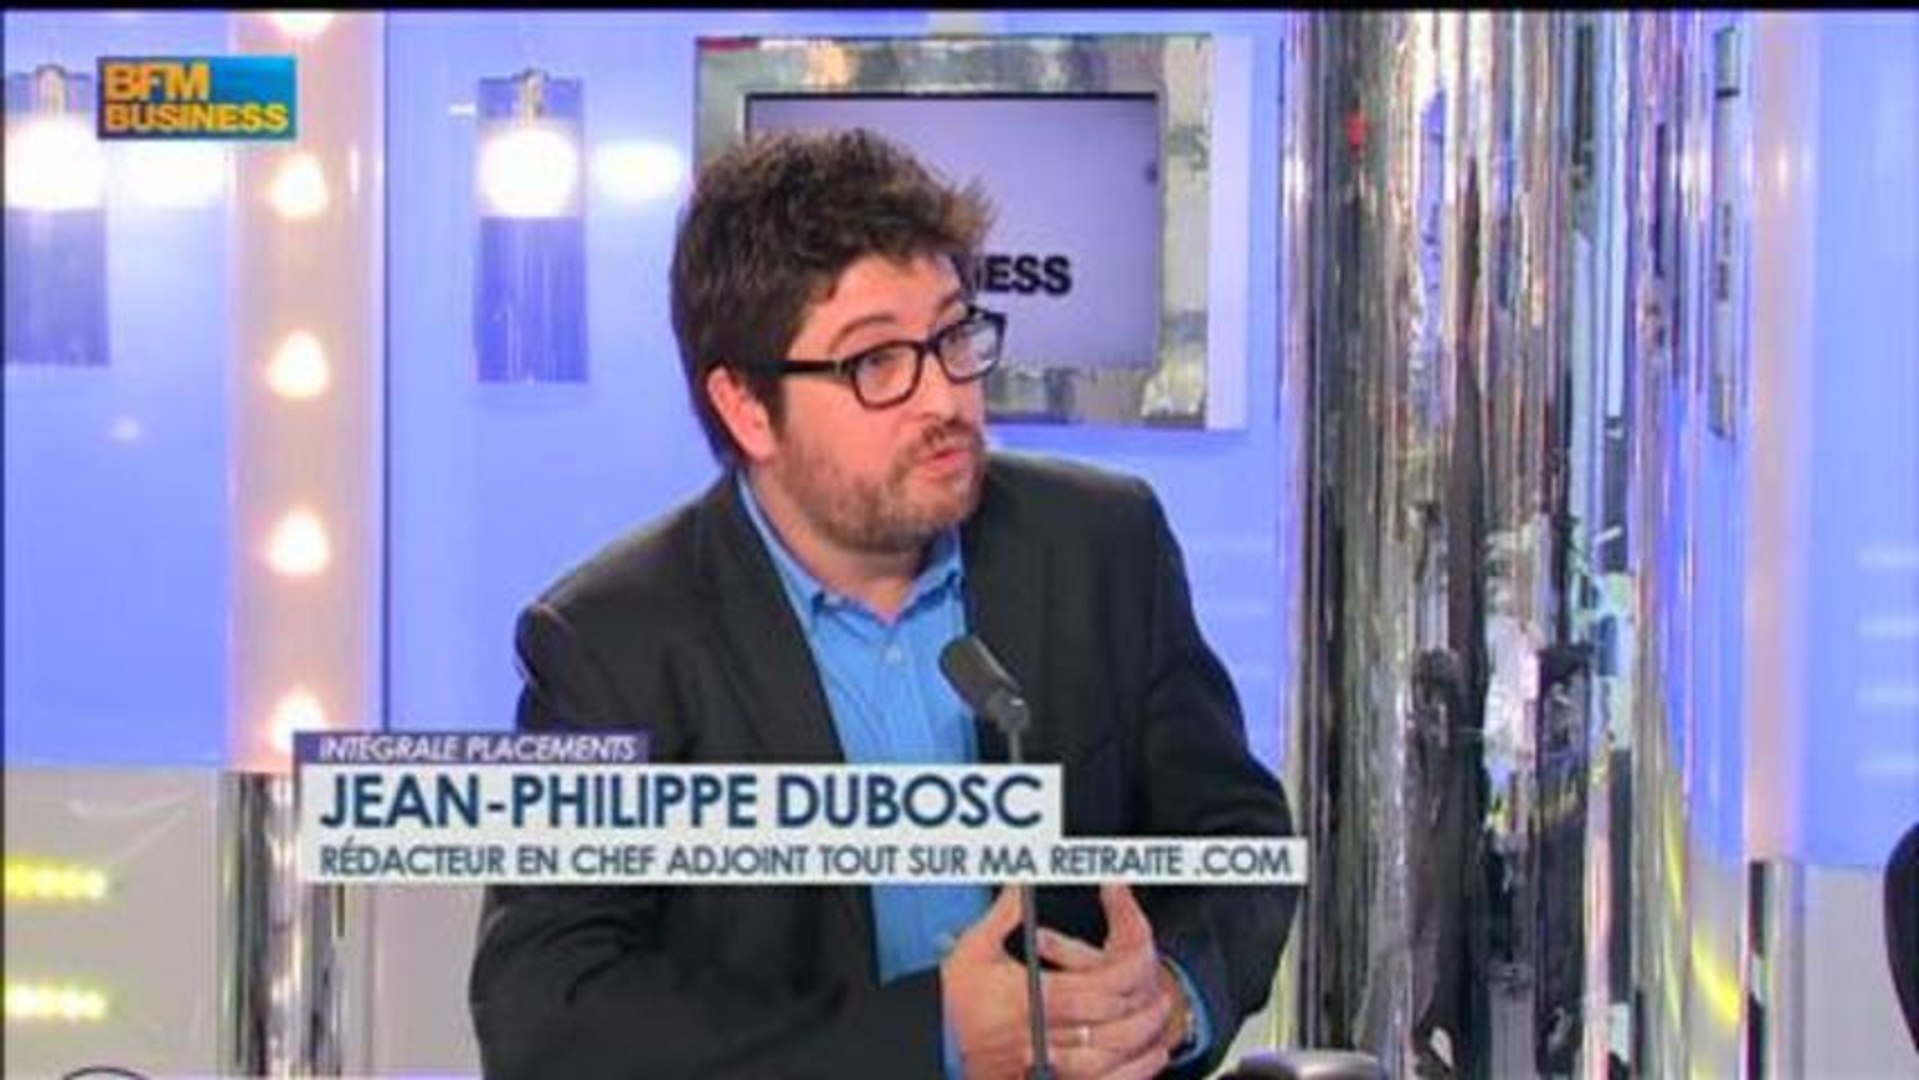 La retraite, une équation complexe à gérer : Jean-Philippe Dubosc,  Intégrale Placements - 27 mai - Vidéo Dailymotion